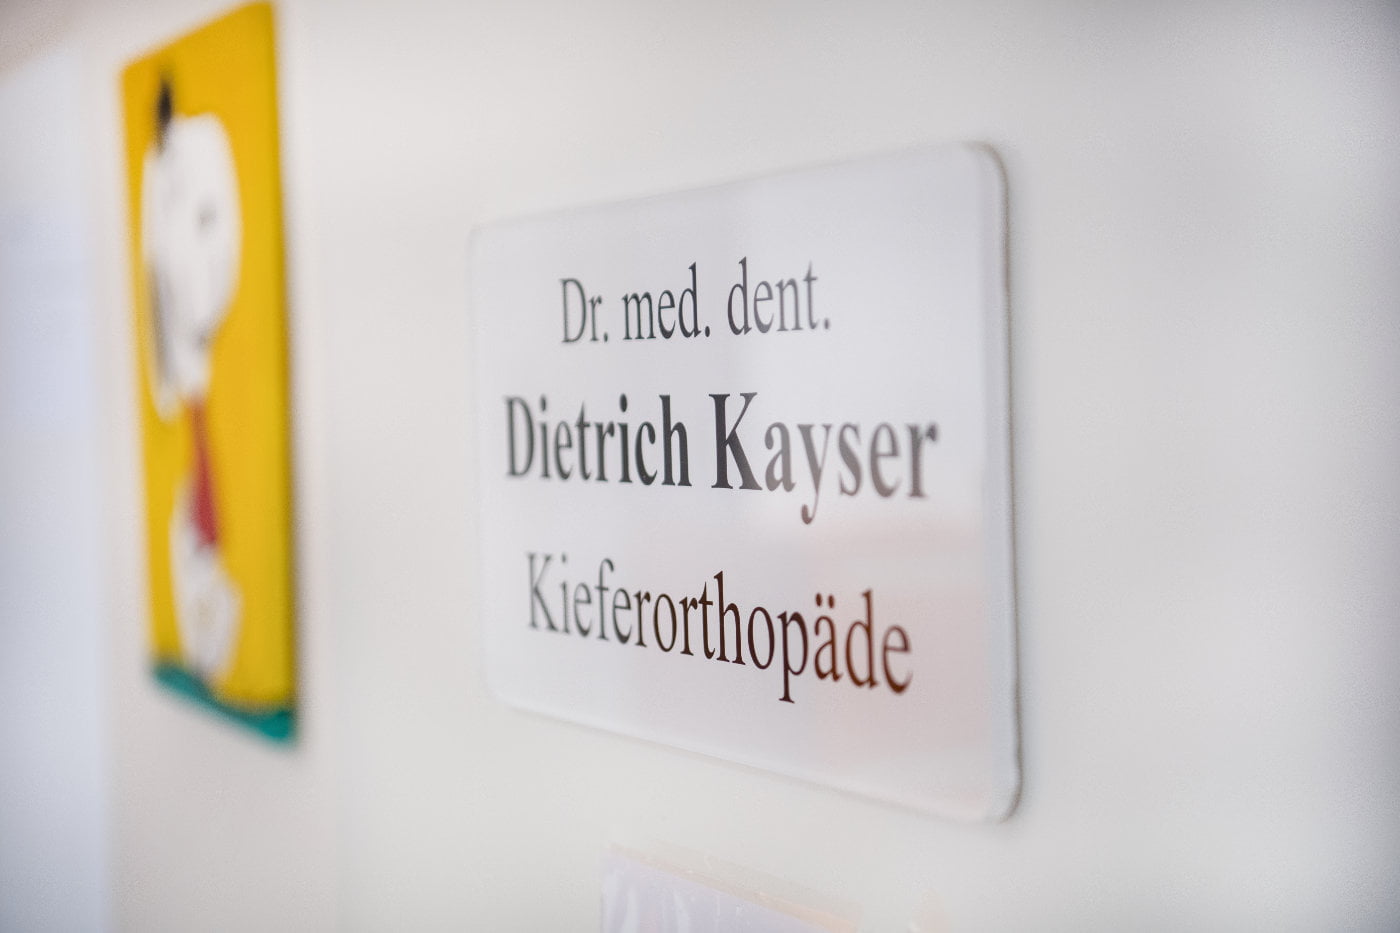 Dr Dietrich Kayser Kieferorthopäde